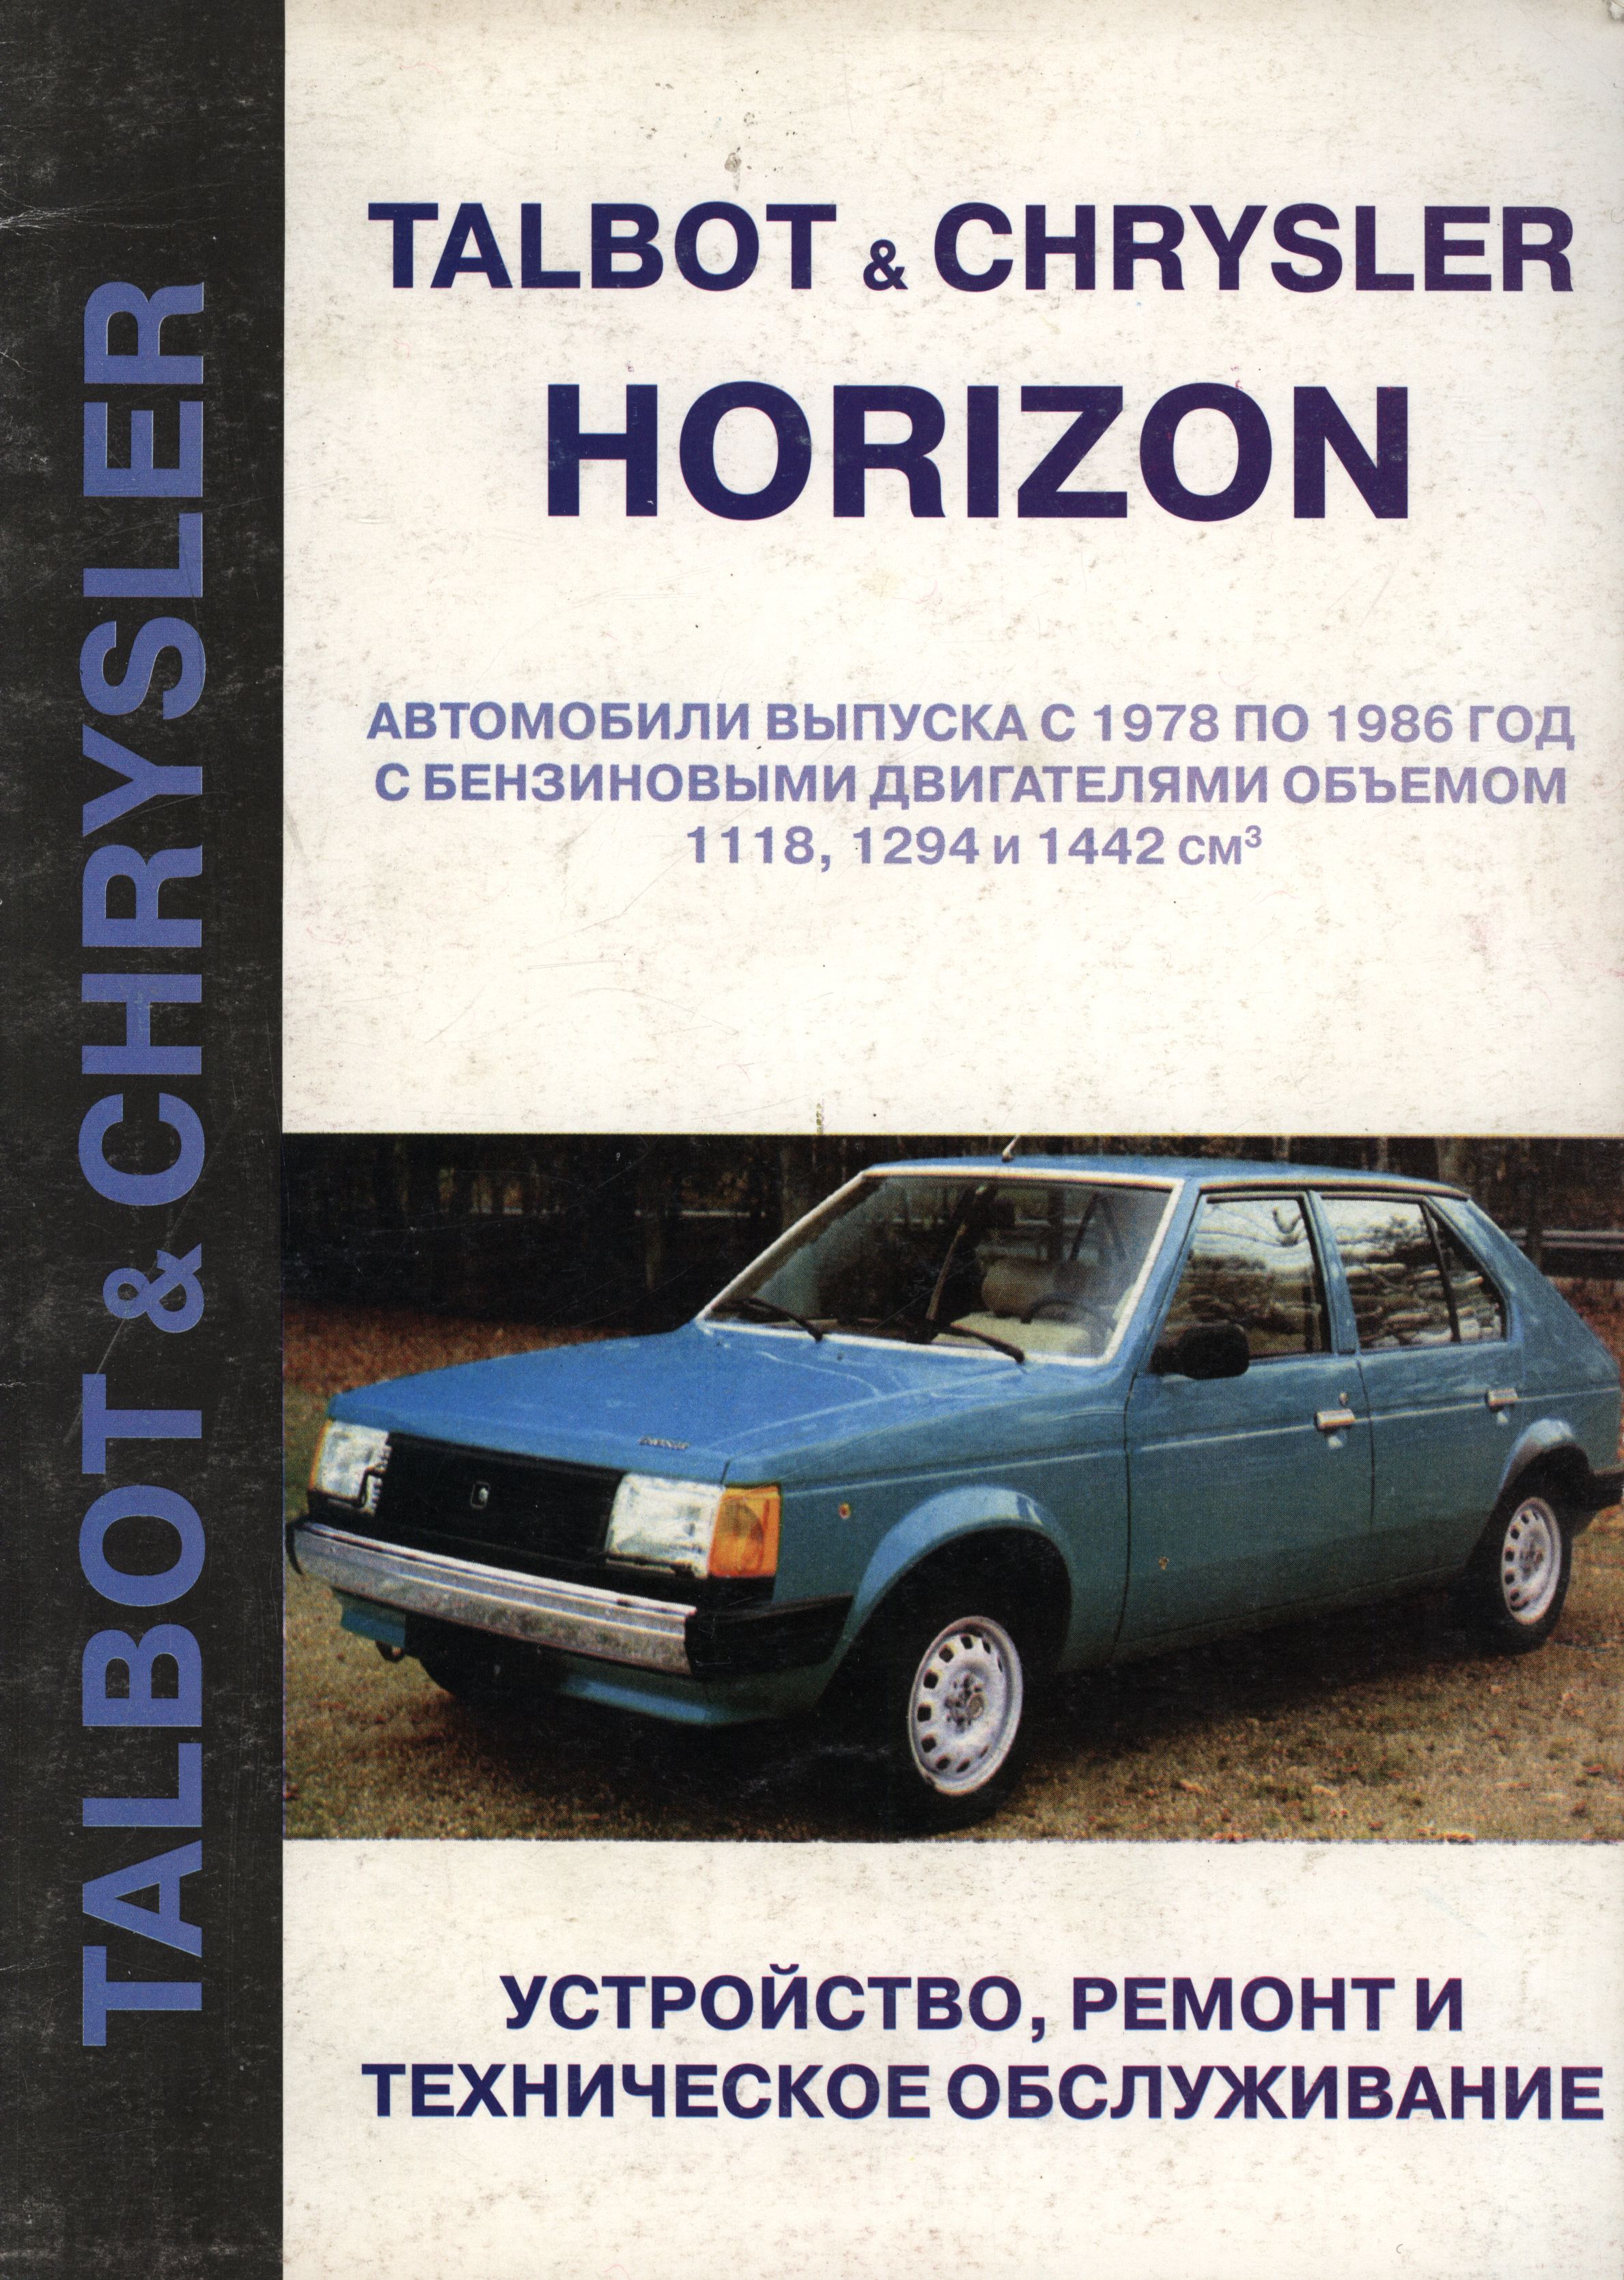 CHRYSLER HORIZON / TALBOT 1978-1986 бензин Пособие по ремонту и техническому обслуживанию